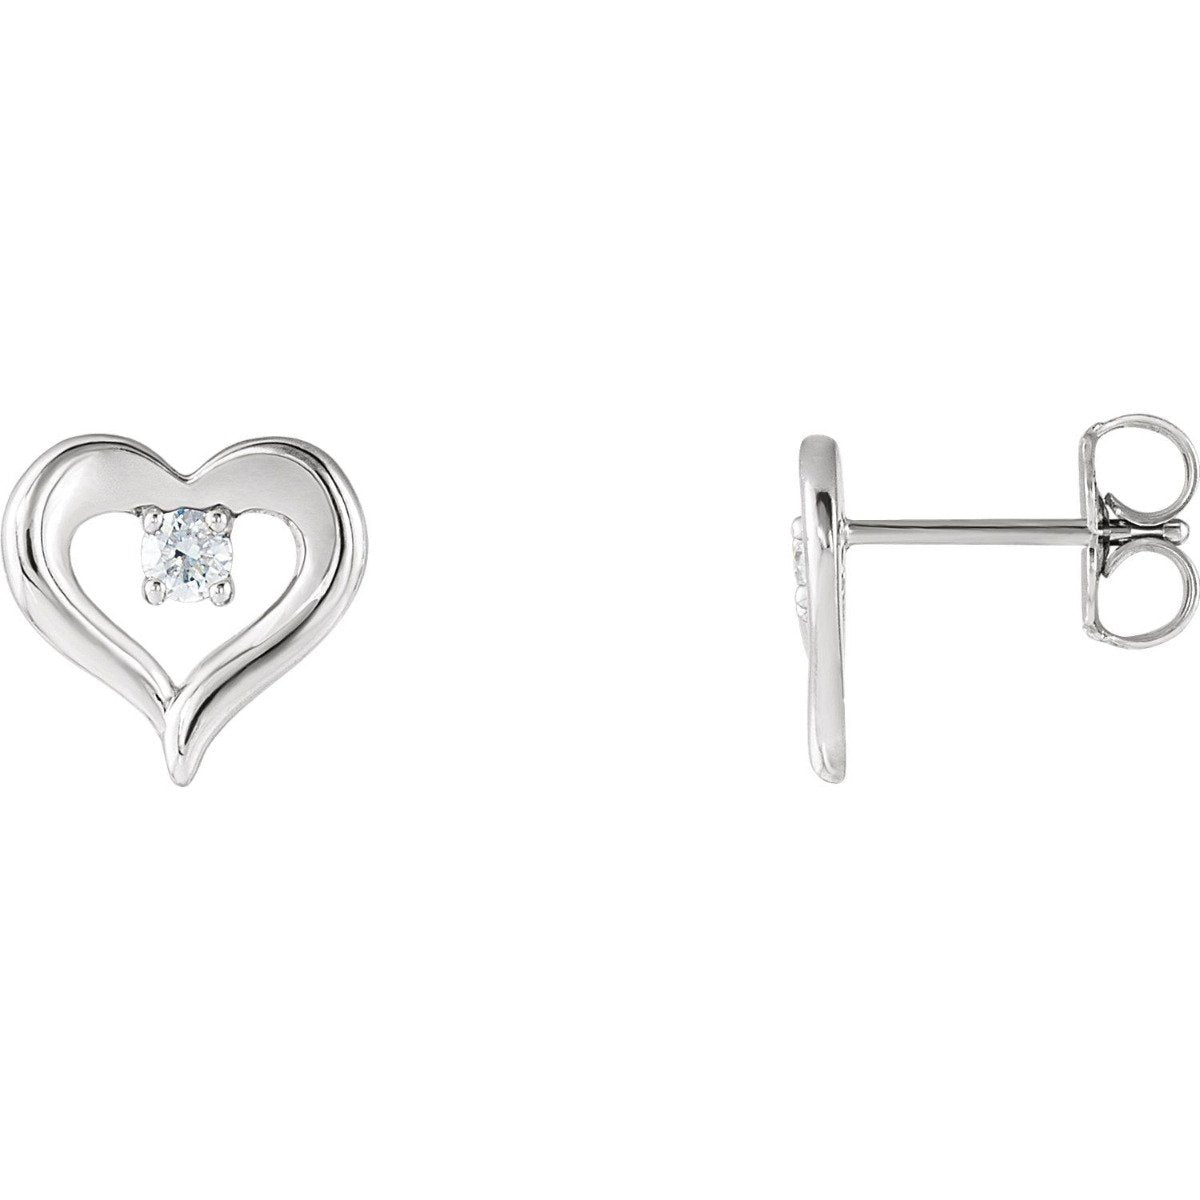 1/10 CTW Diamond Heart Stud Earrings Sterling Silver / Silver